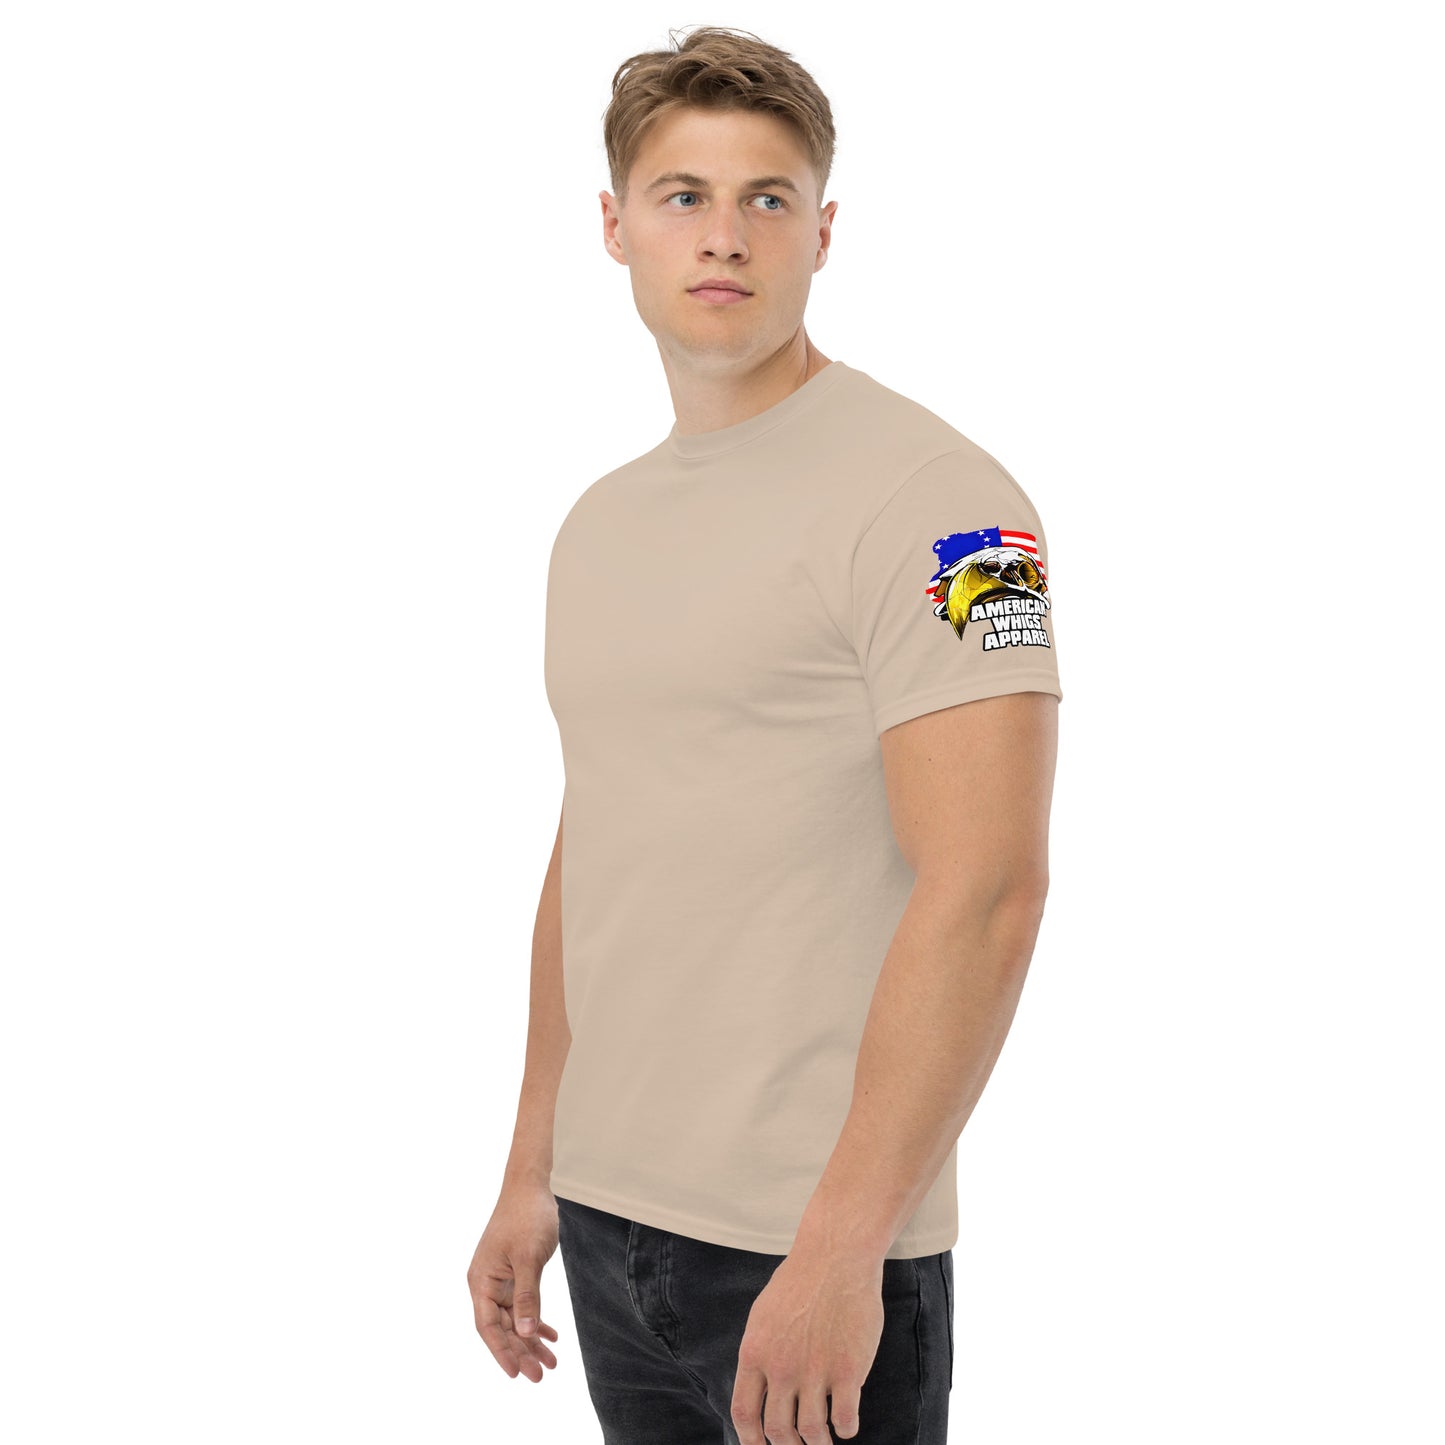 SWAT Fatigue Under-Shirt